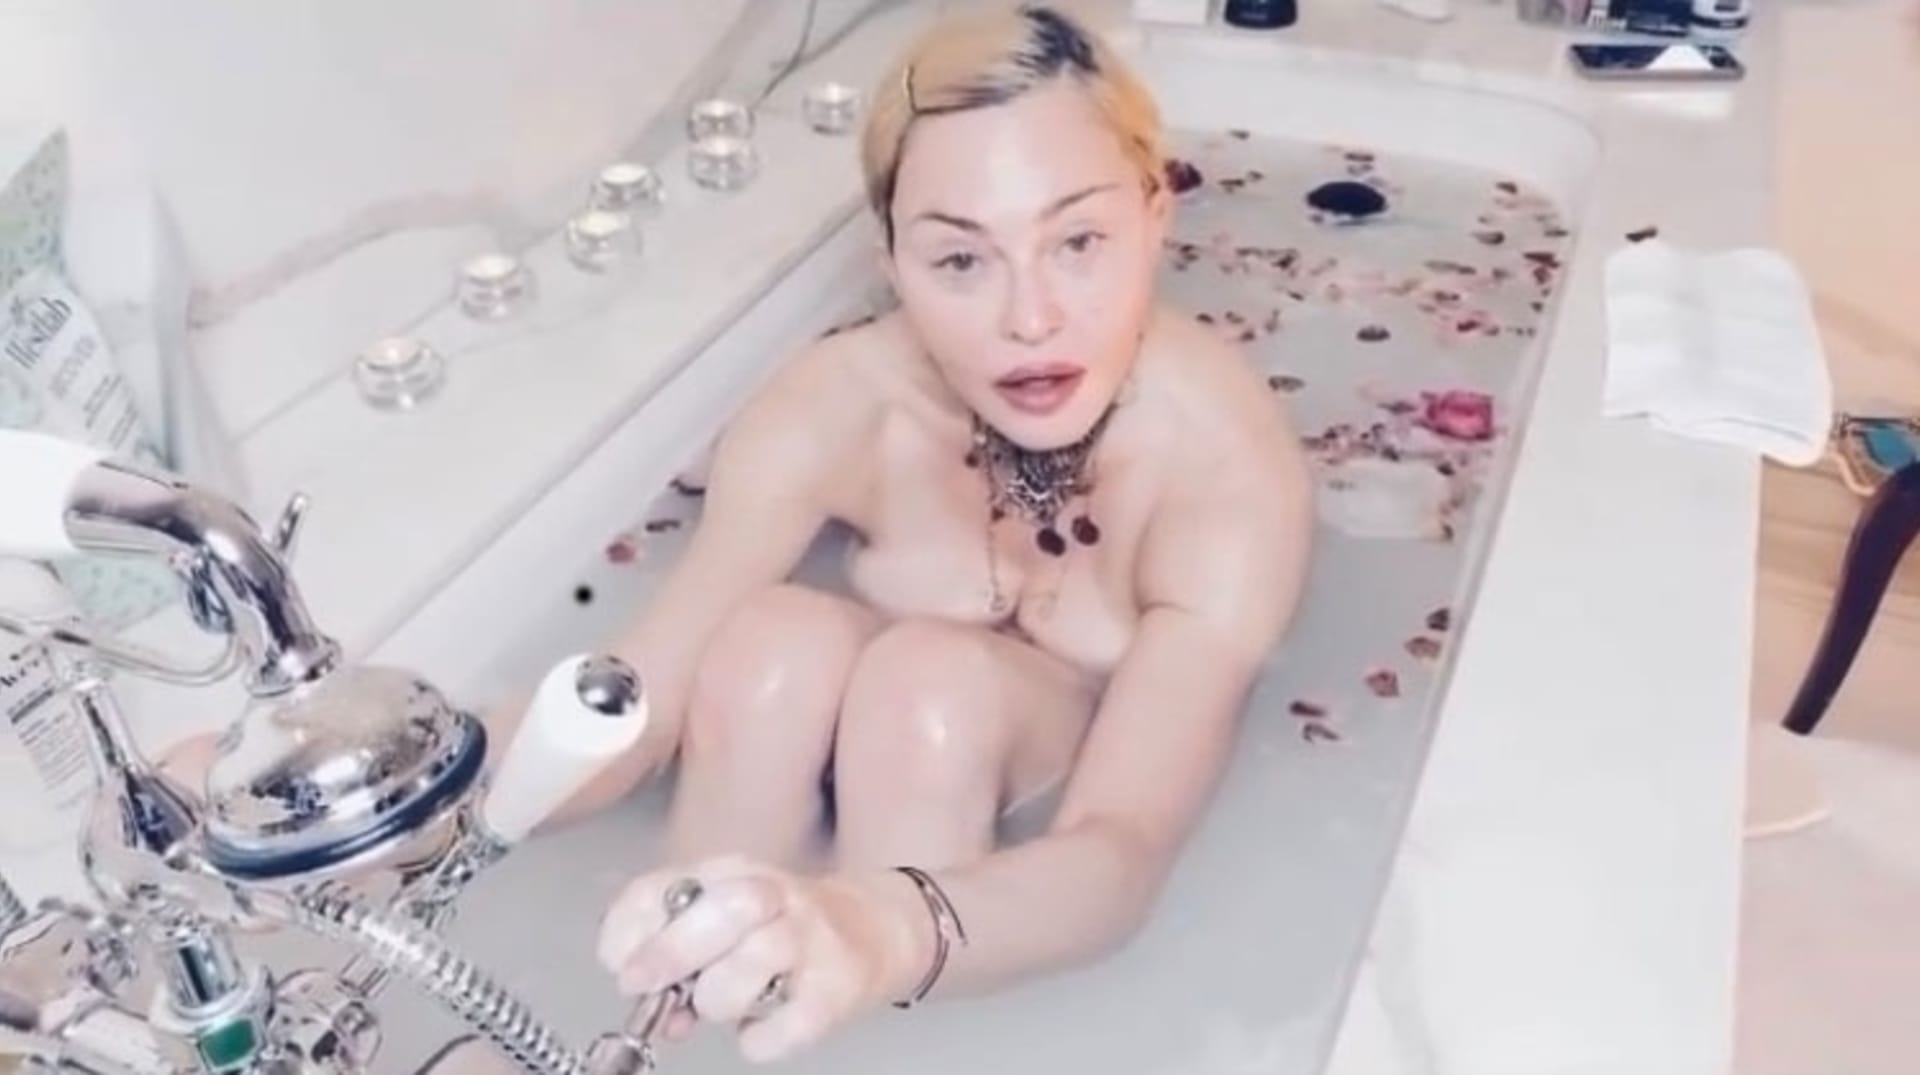 Ukázala se nahá i ve vaně.